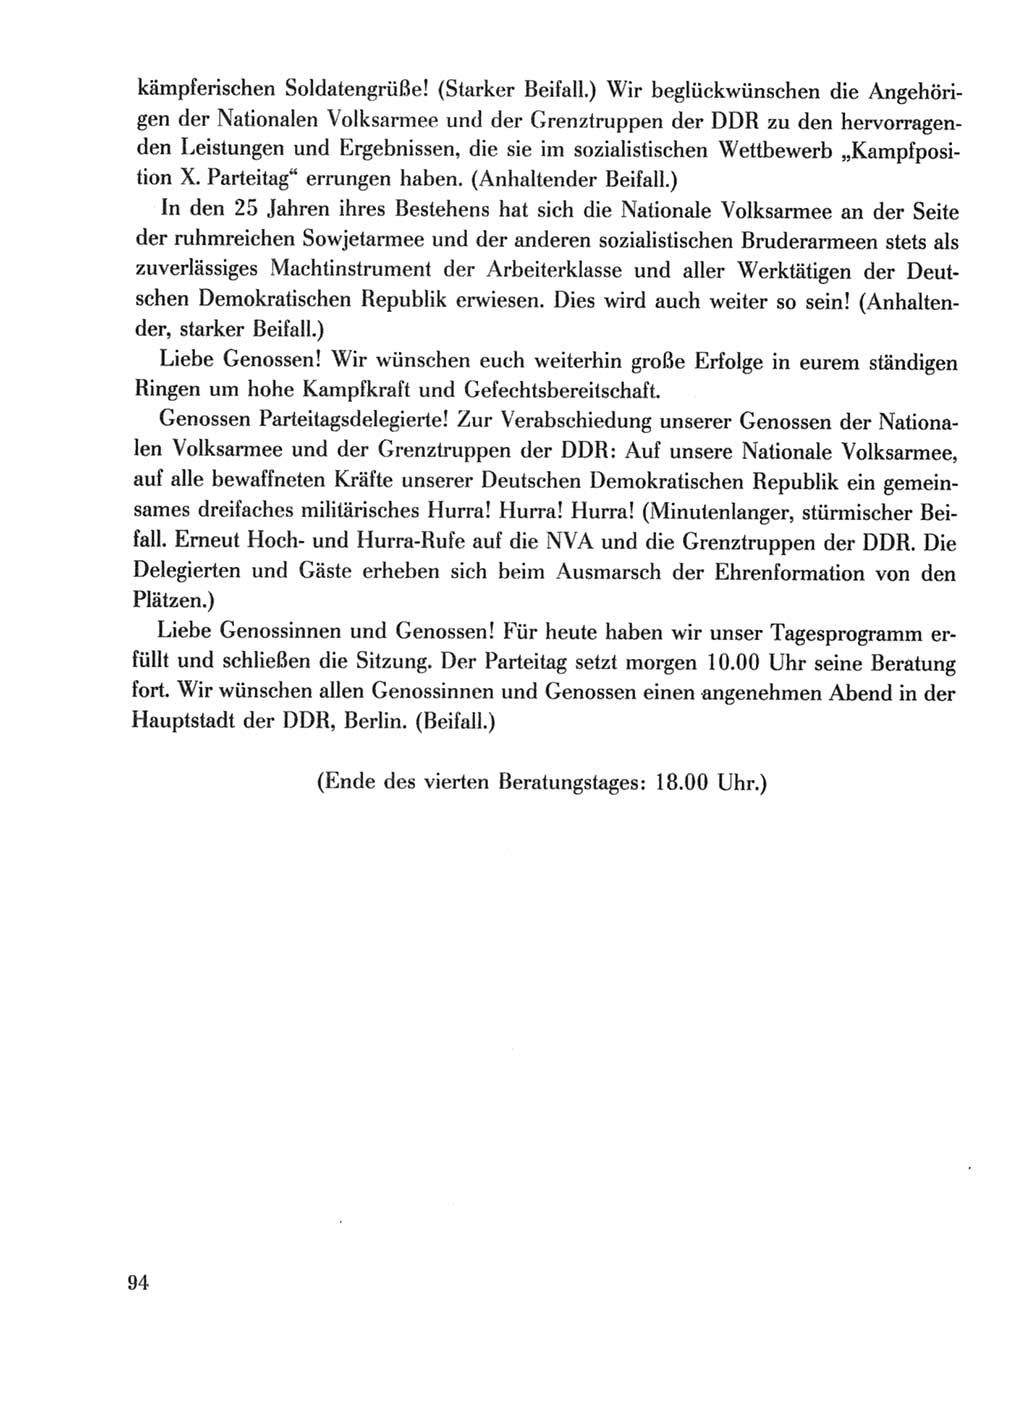 Protokoll der Verhandlungen des Ⅹ. Parteitages der Sozialistischen Einheitspartei Deutschlands (SED) [Deutsche Demokratische Republik (DDR)] 1981, Band 2, Seite 94 (Prot. Verh. Ⅹ. PT SED DDR 1981, Bd. 2, S. 94)